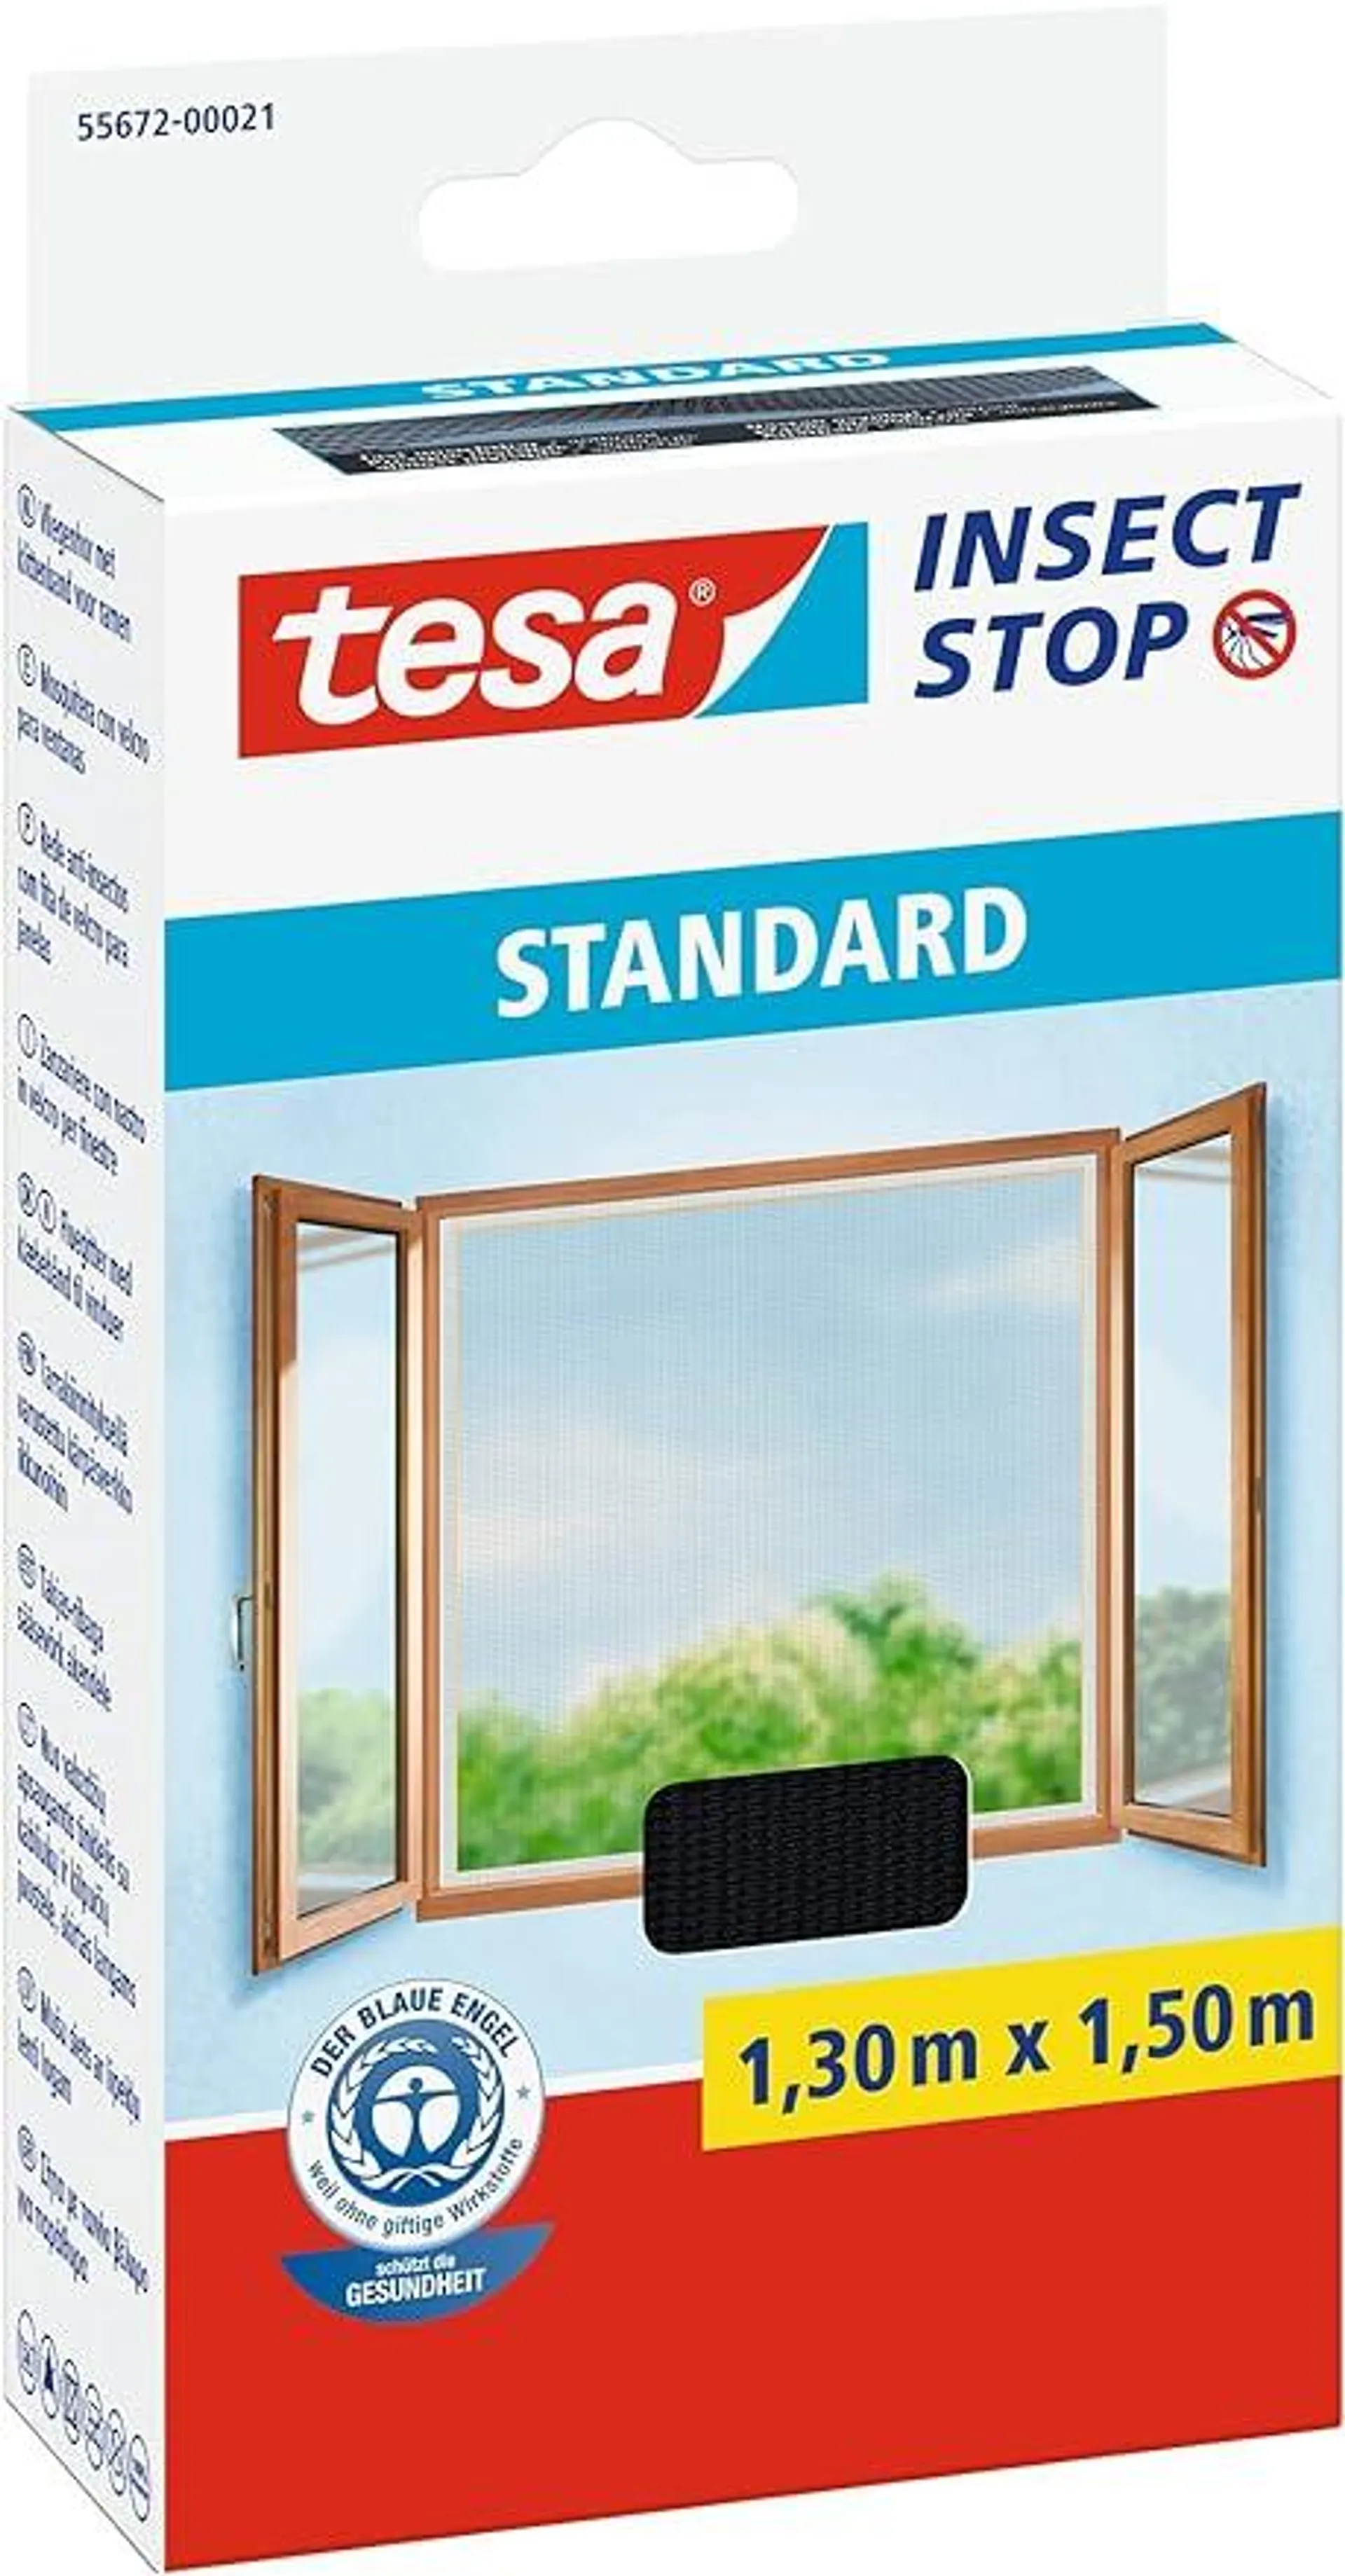 tesa Insect Stop Standard Fliegengitter für Fenster - Insektenschutz zuschneidbar - Mückenschutz ohne Bohren - 1 x Fliegen Netz anthrazit - 130 cm x 150 cm